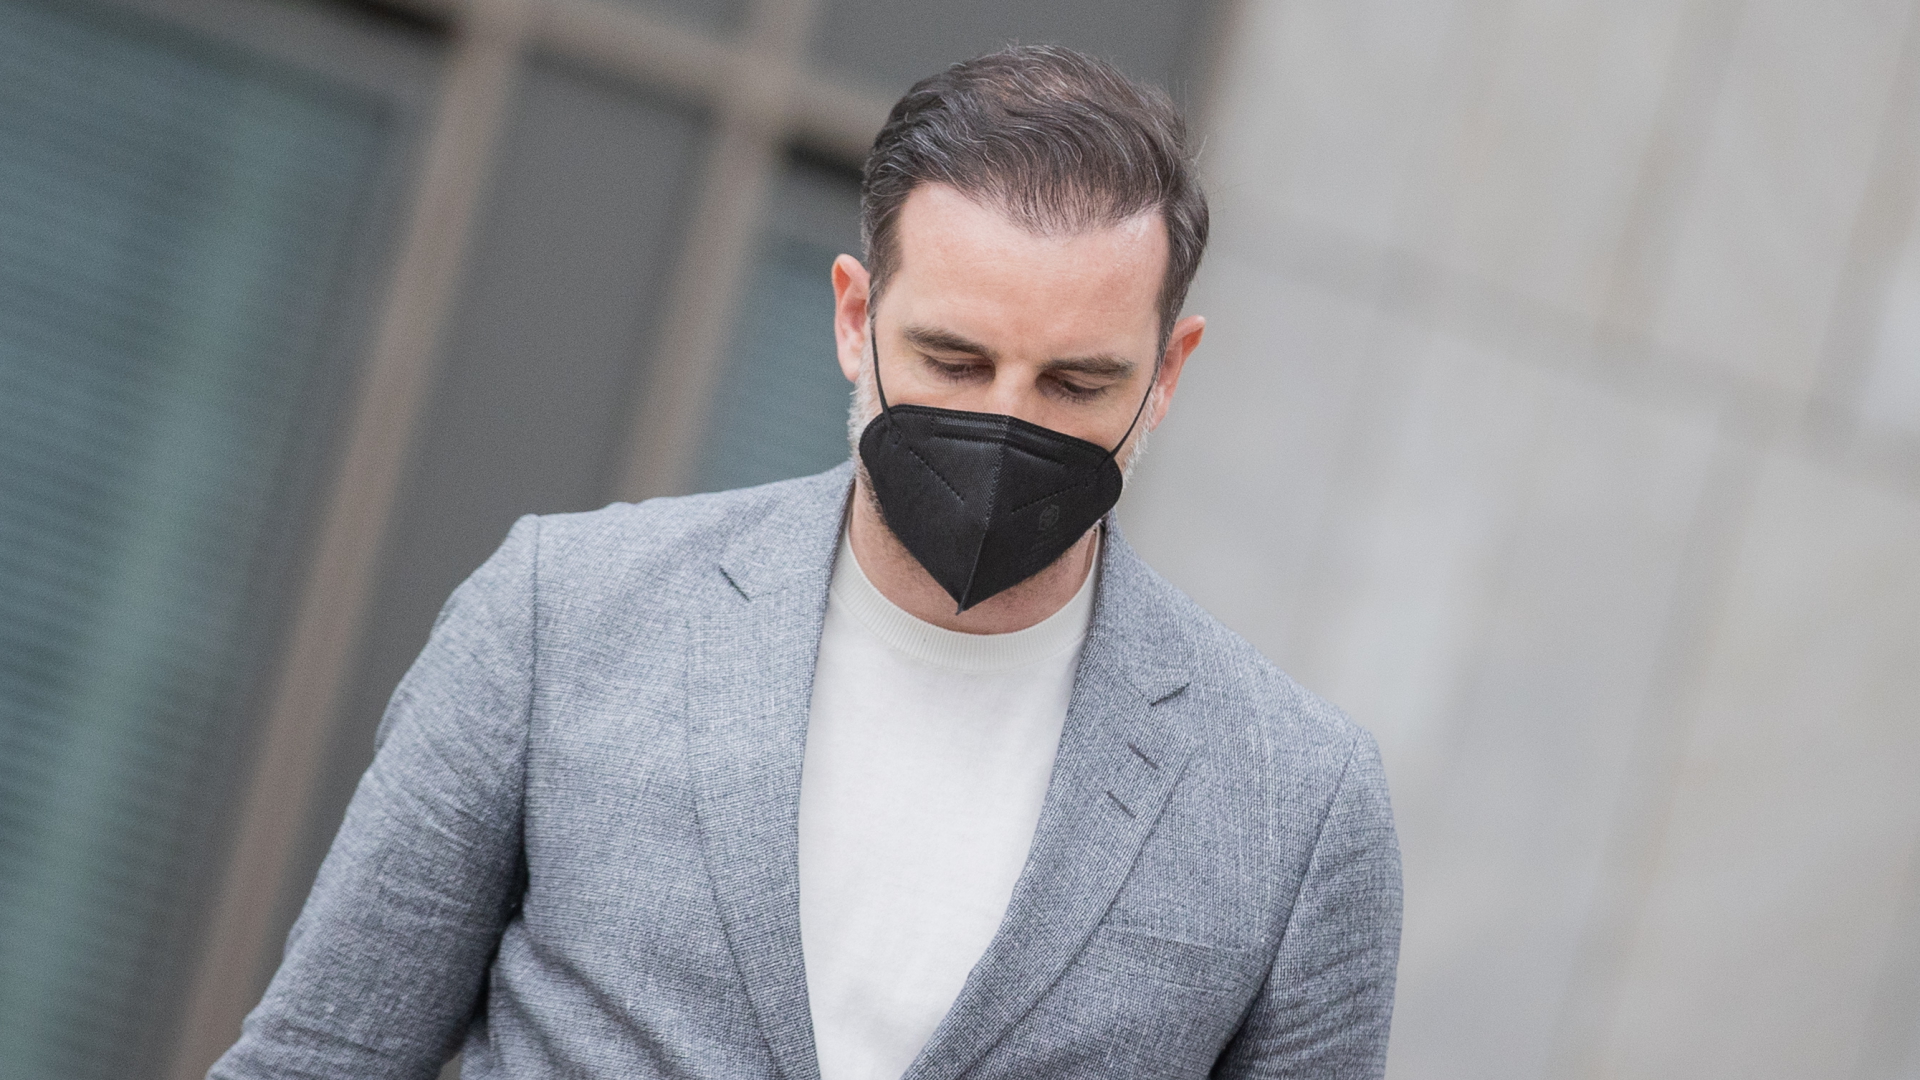 Der frühere Nationalspieler Christoph Metzelder verlässt nach dem Urteilsspruch gegen ihn das Amtsgericht Düsseldorf. Er blickt zu Boden und trägt eine schwarze Corona-Schutzmaske. | dpa